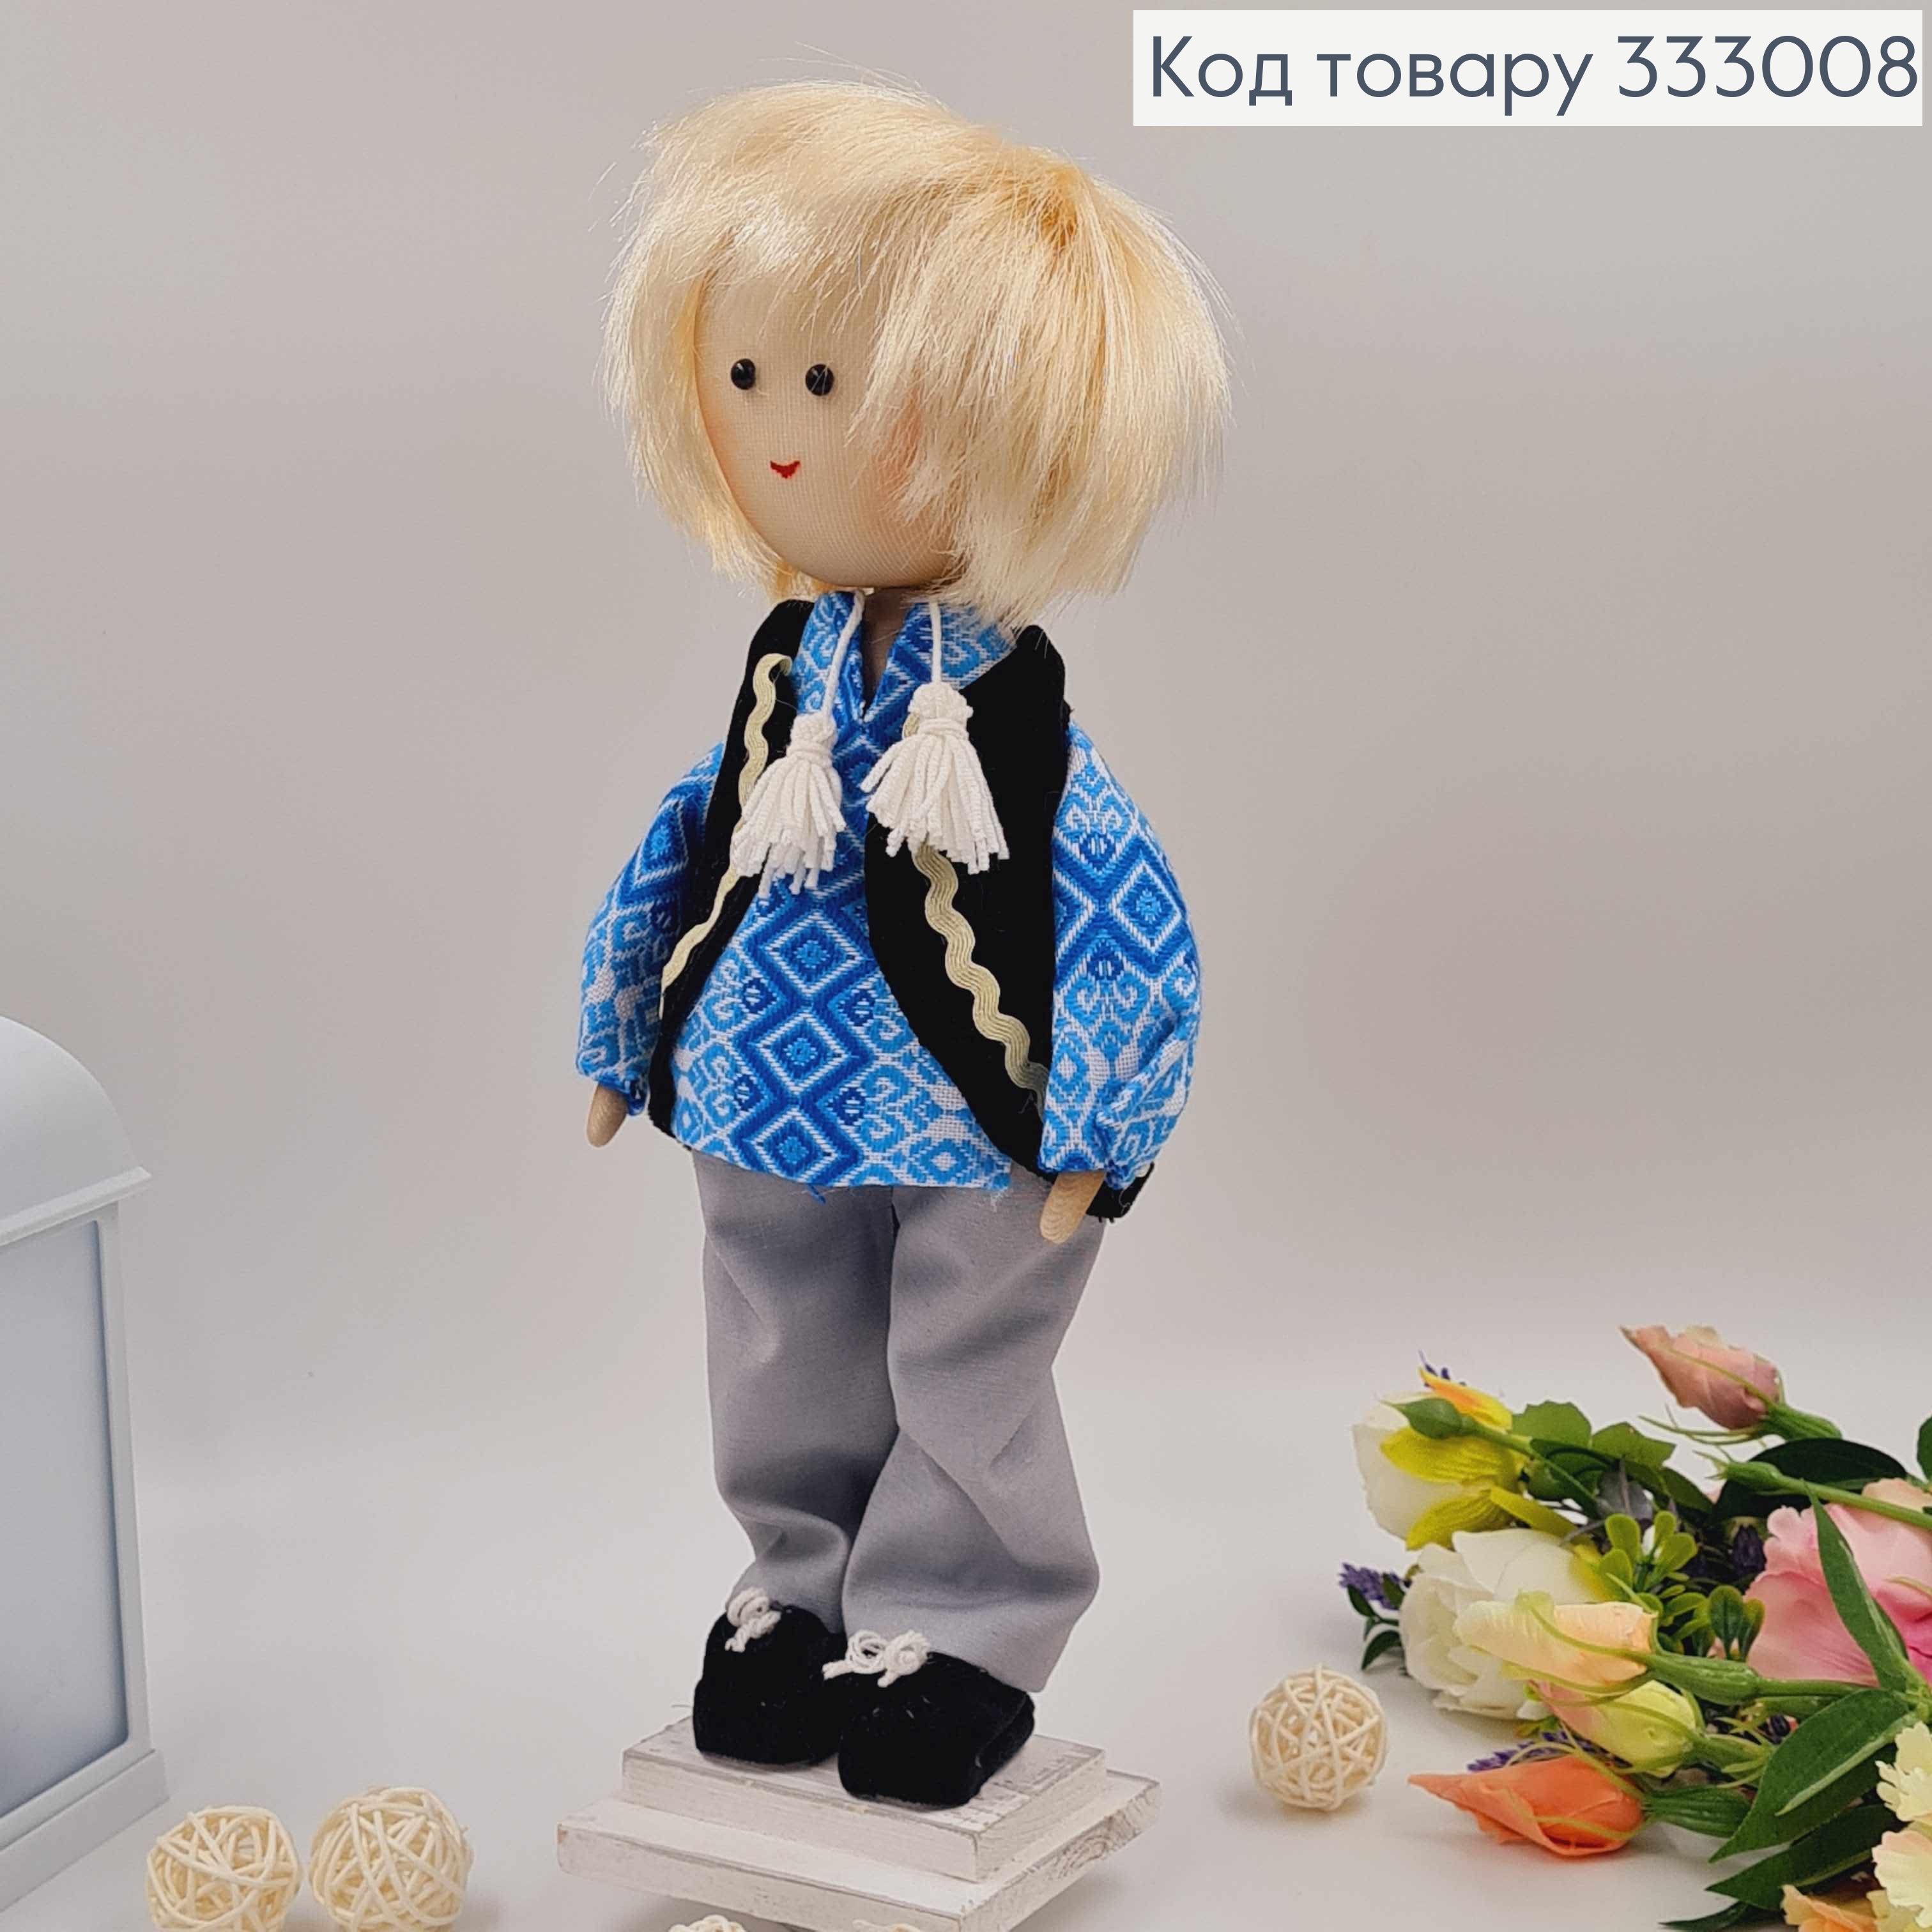 Кукла Мальчик, "белокурый" в голубой рубашке, высота 34см, ручная работа, Украина. 333008 фото 2